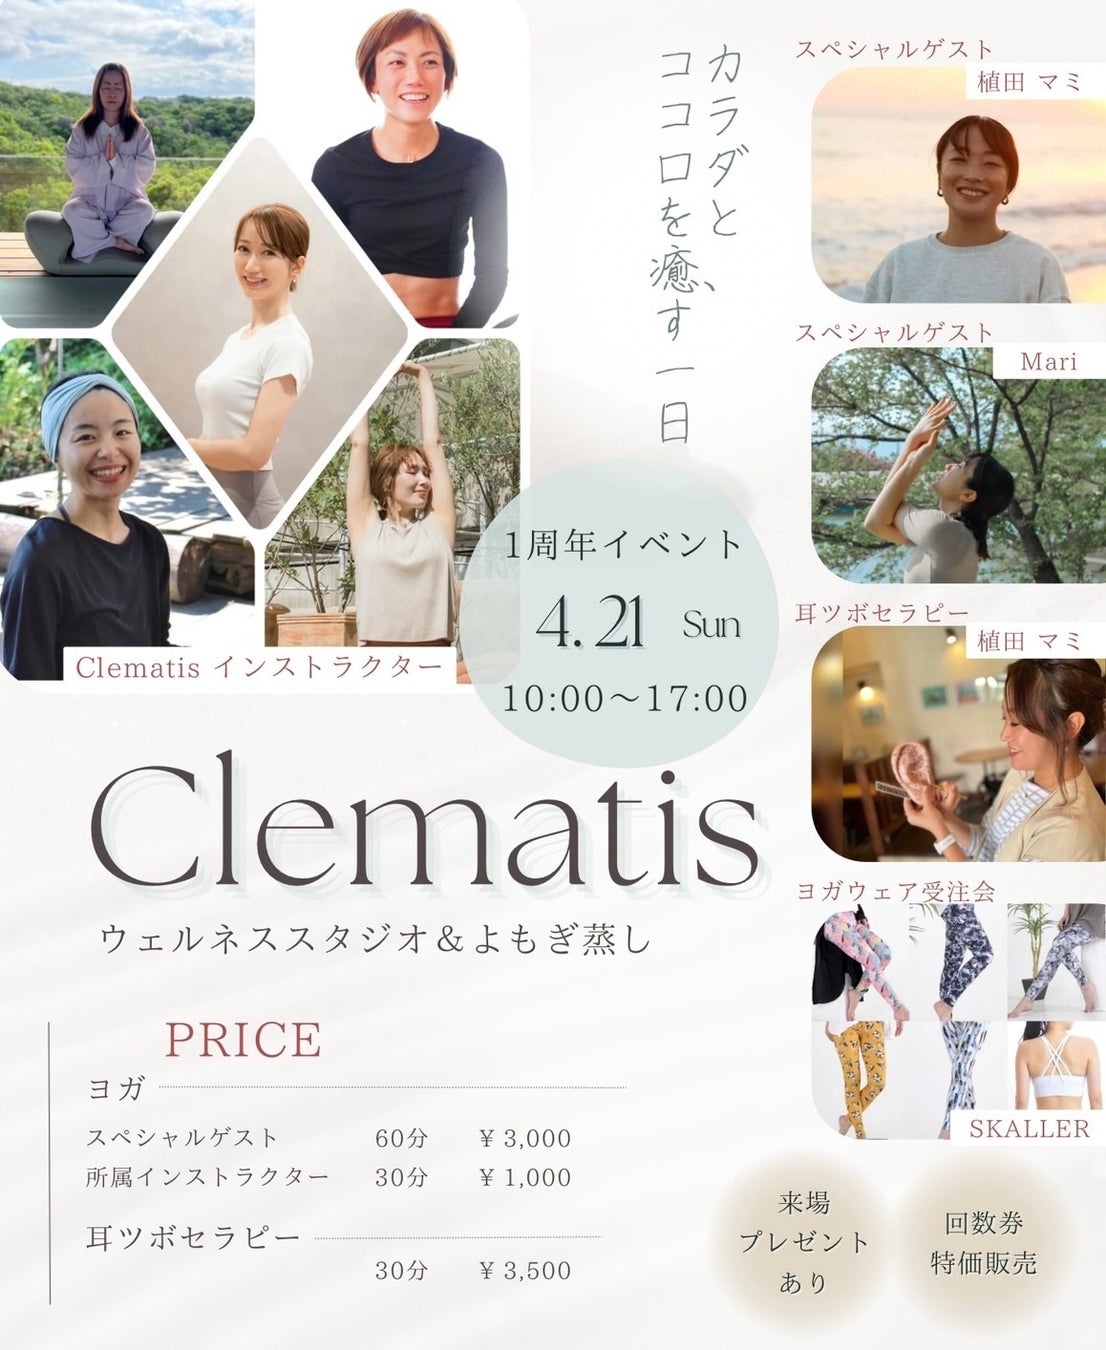 長野県松本市にてヨガスタジオ「Clematis」１周年記念イベントに @OUCHIDE_MARATAN が協賛